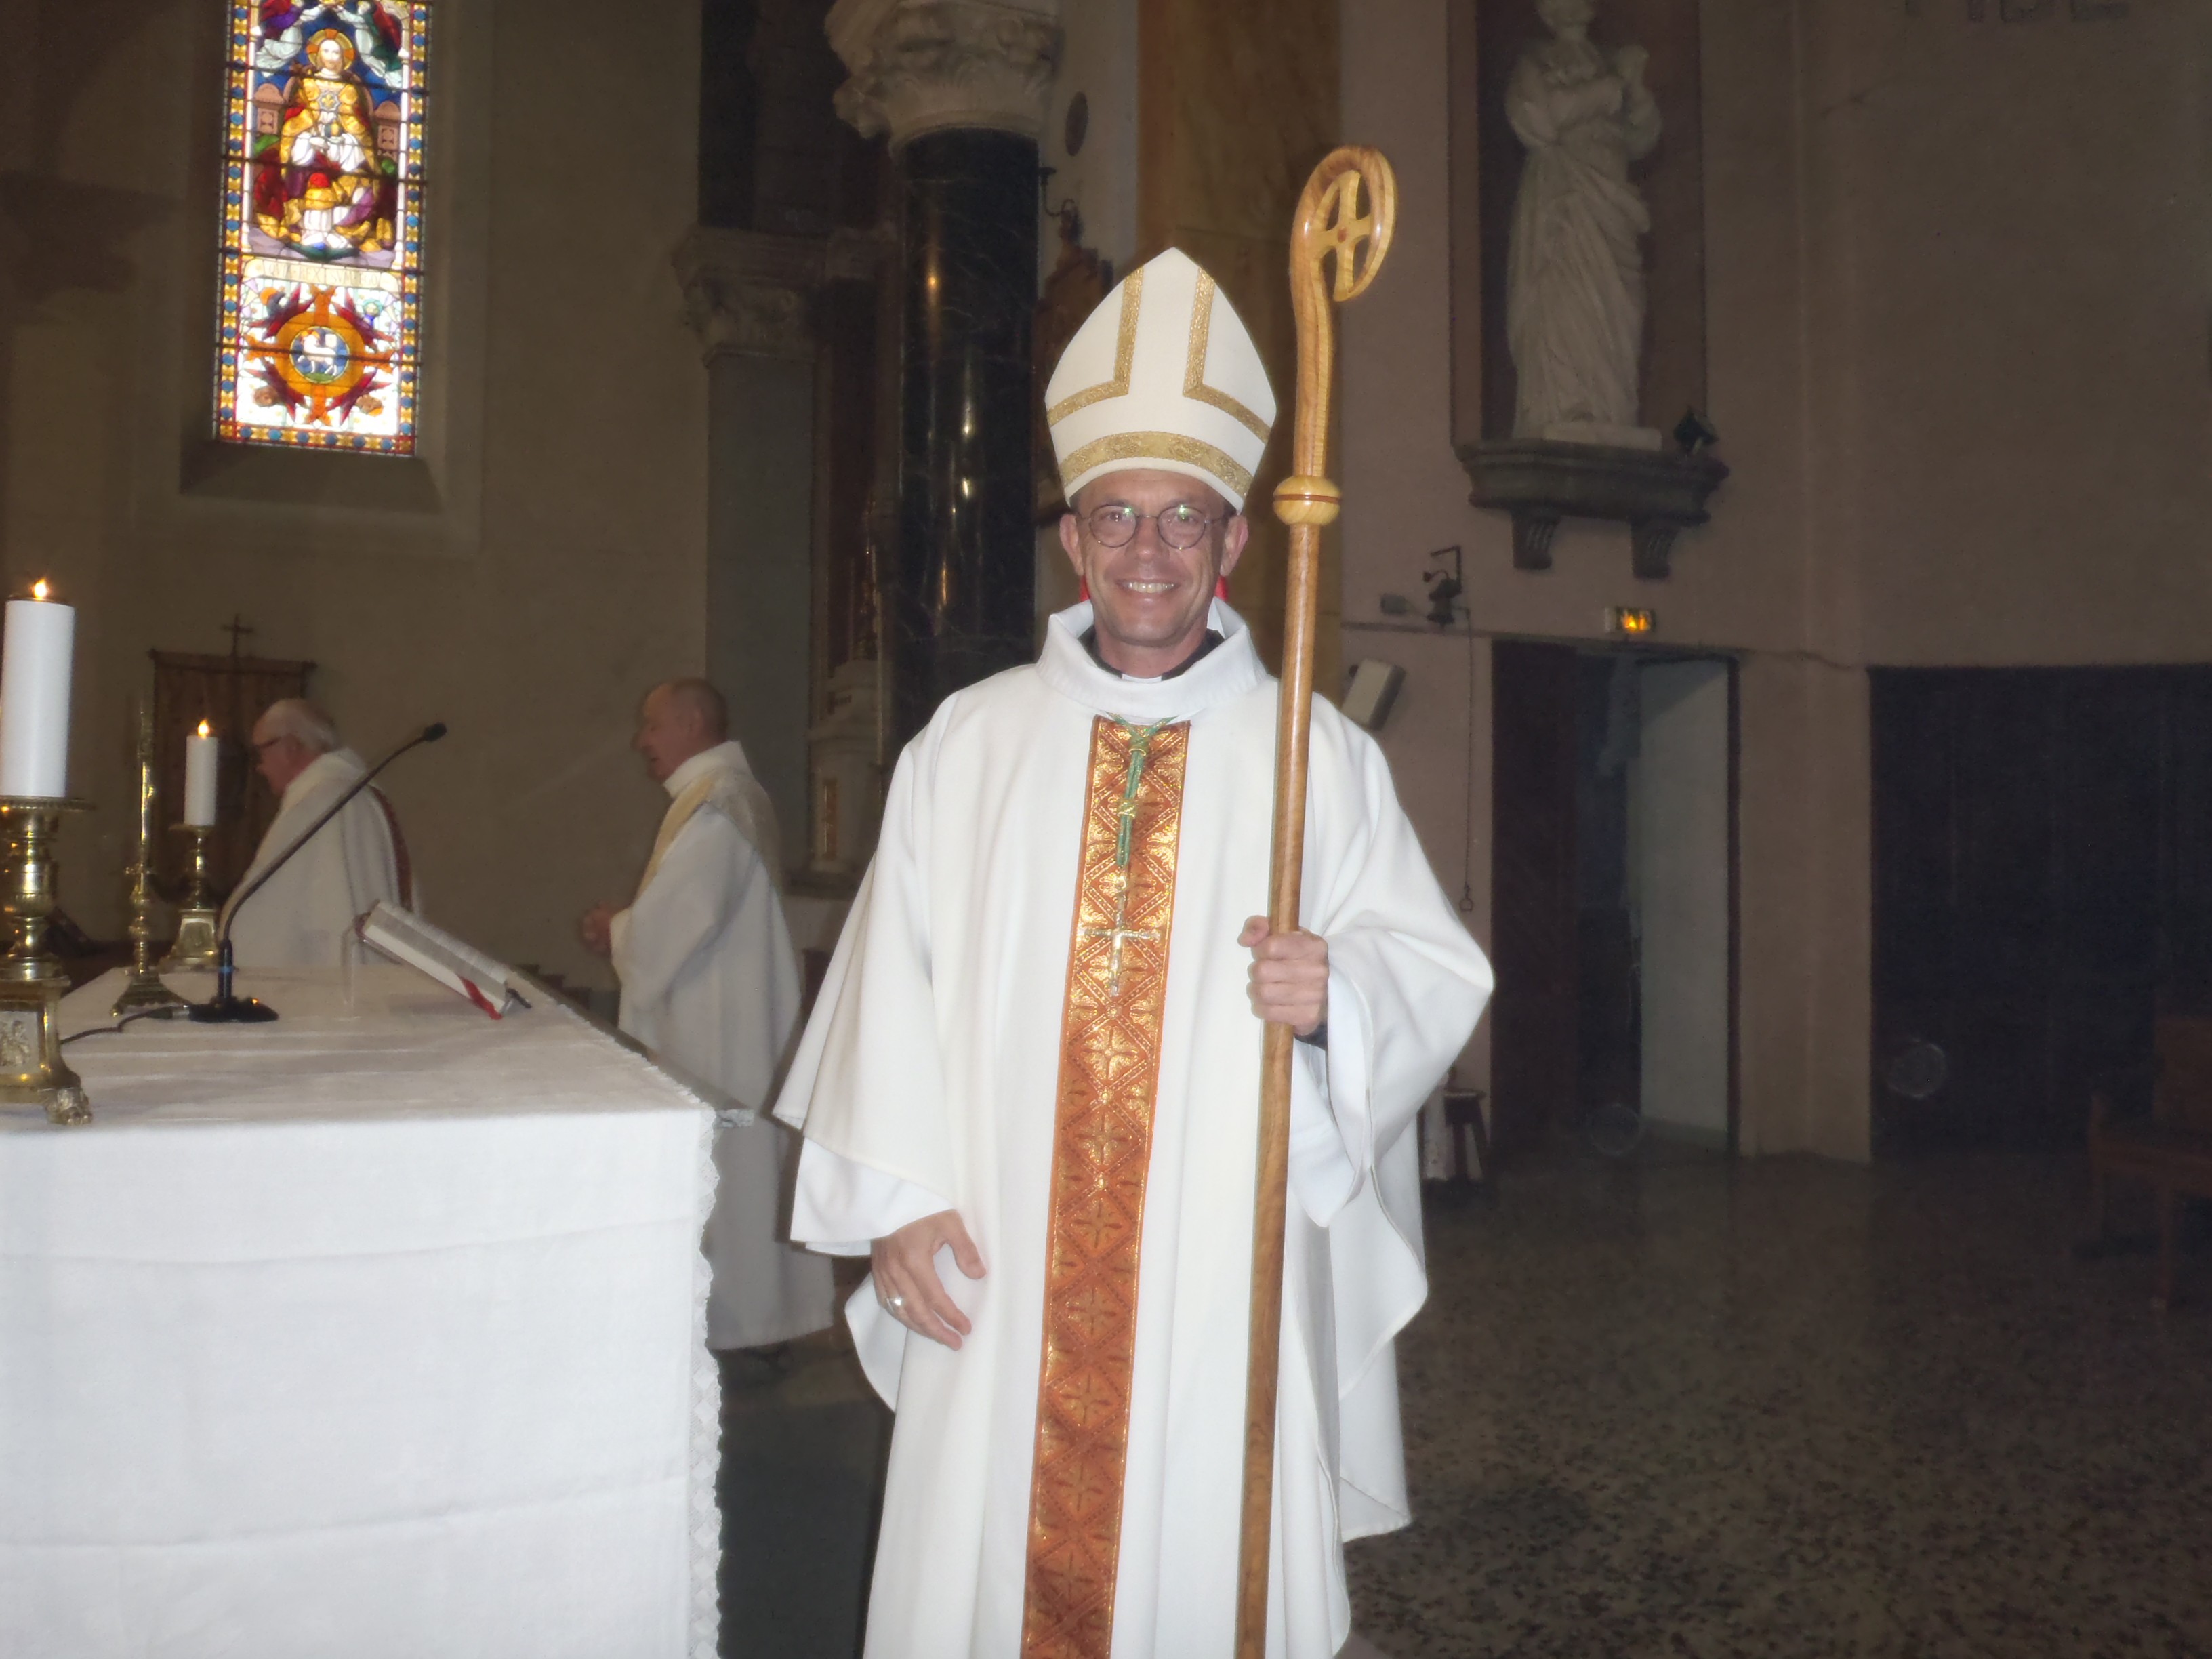 l'évêque arbore un sourire radieux à l'issue de la messe